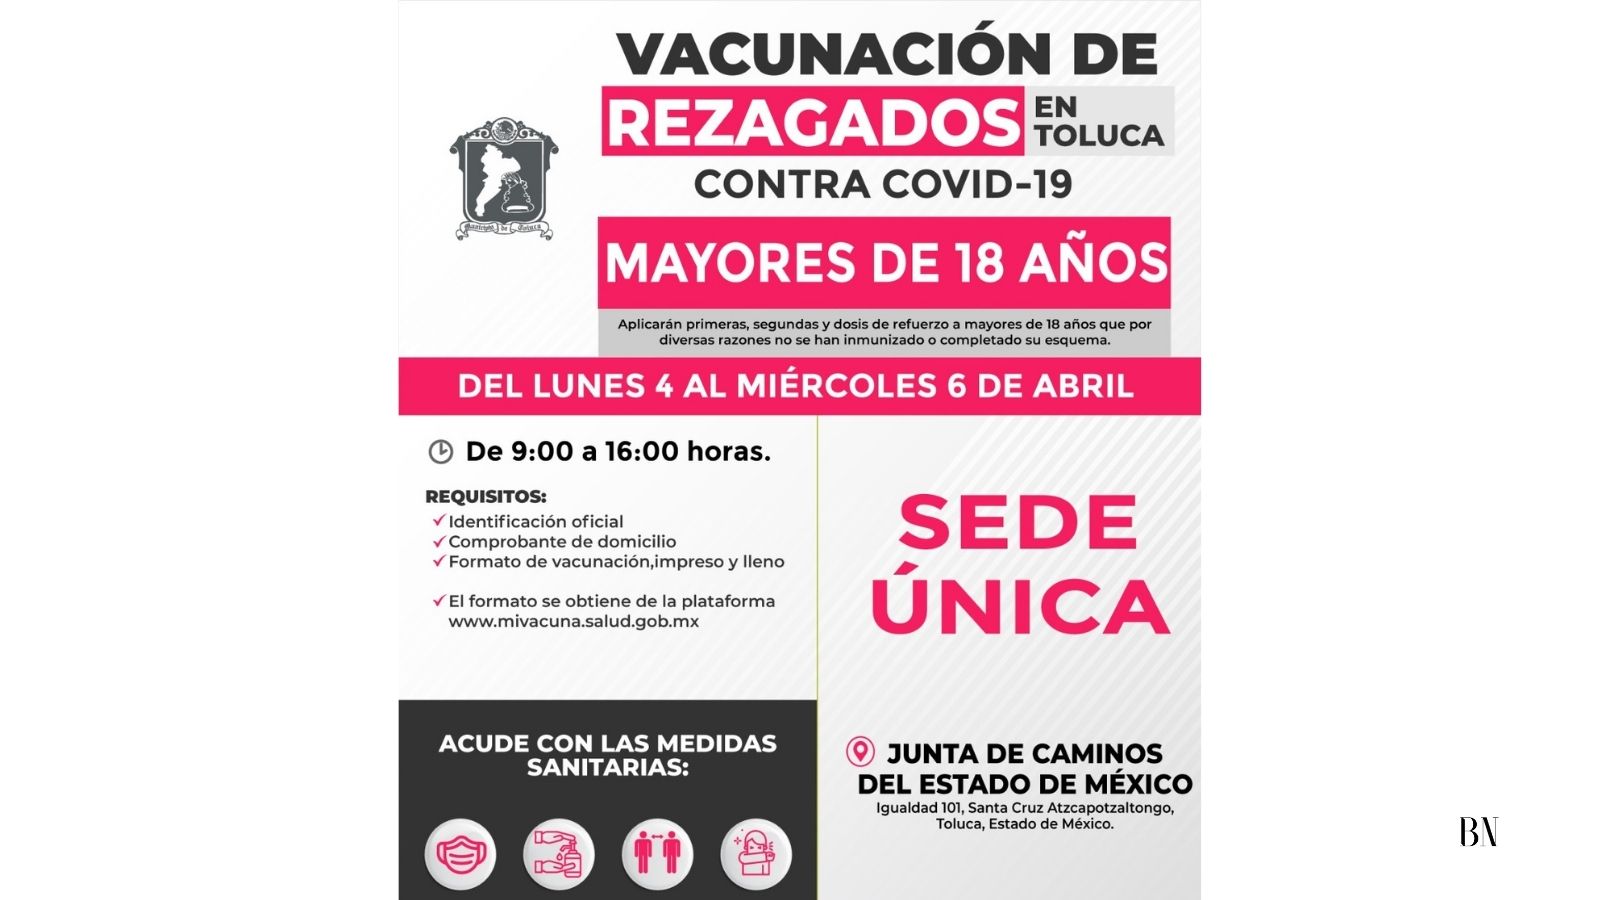 La Junta Local de Caminos, única sede para vacuna a rezagados en Toluca